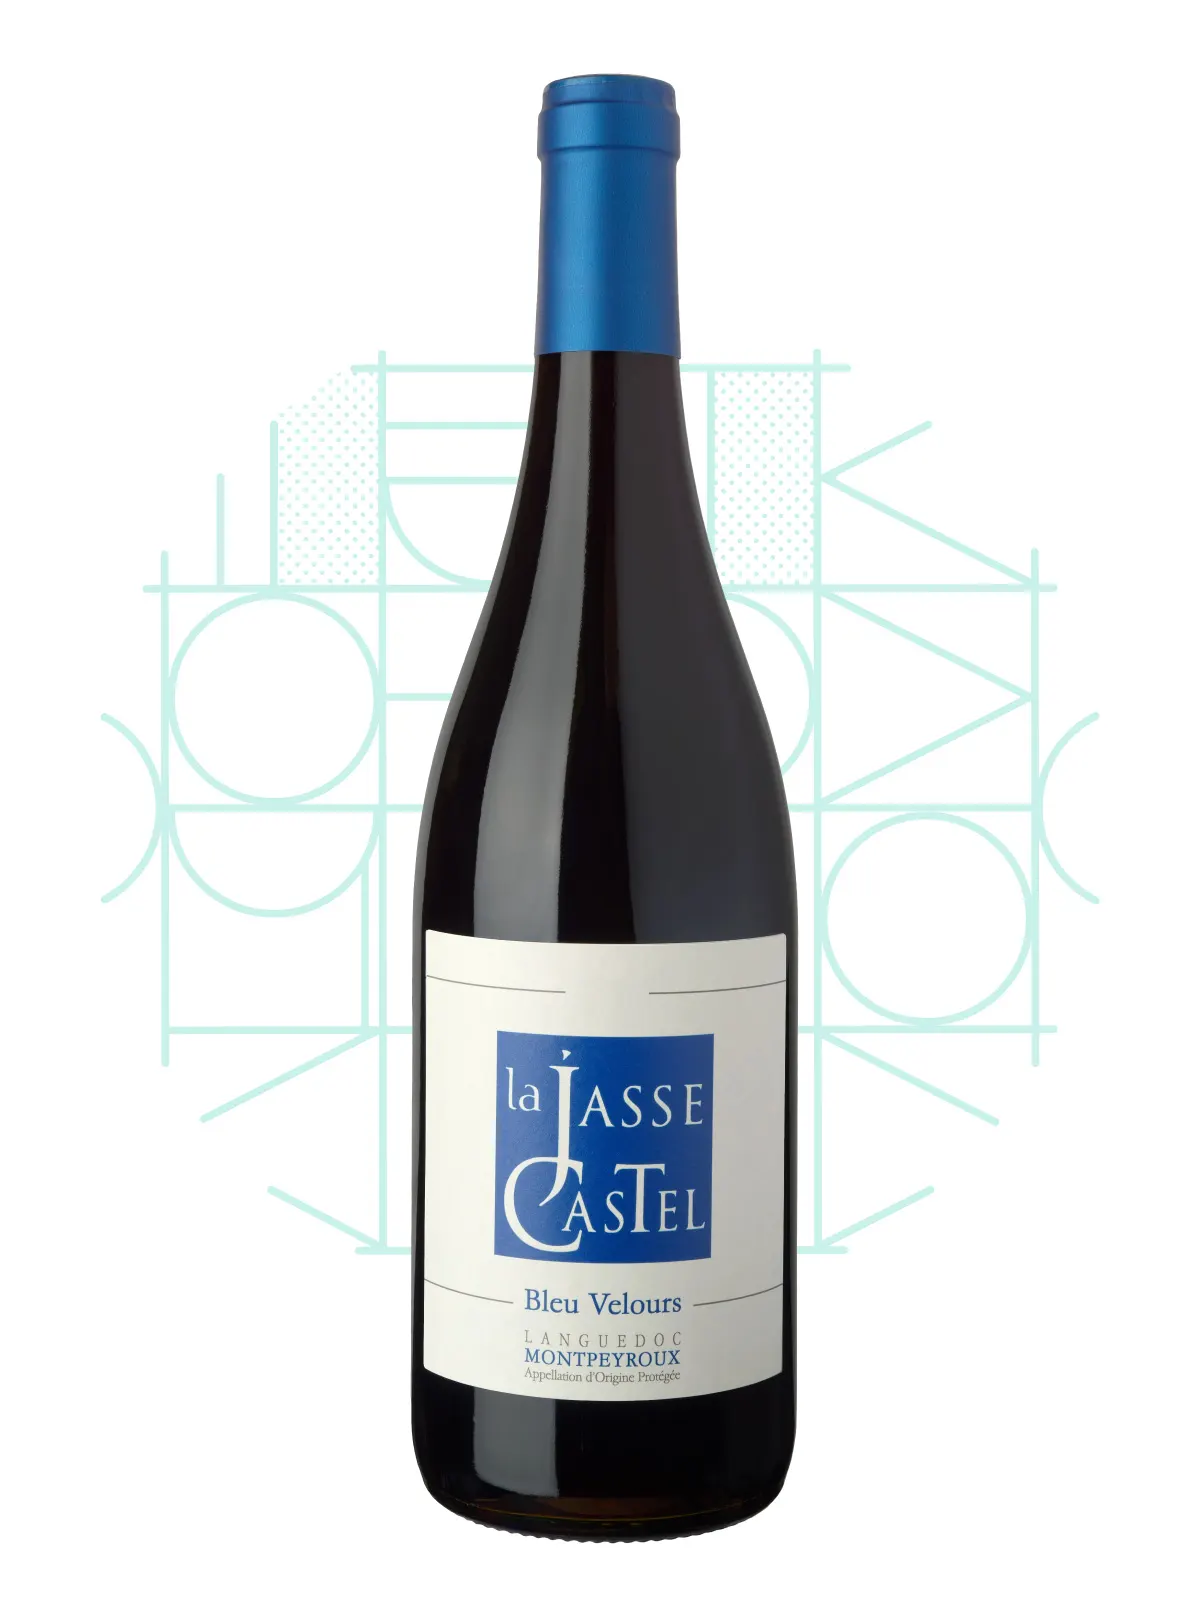 La Jasse Castel - Vin rouge bio - Cuvée Bleu Velours